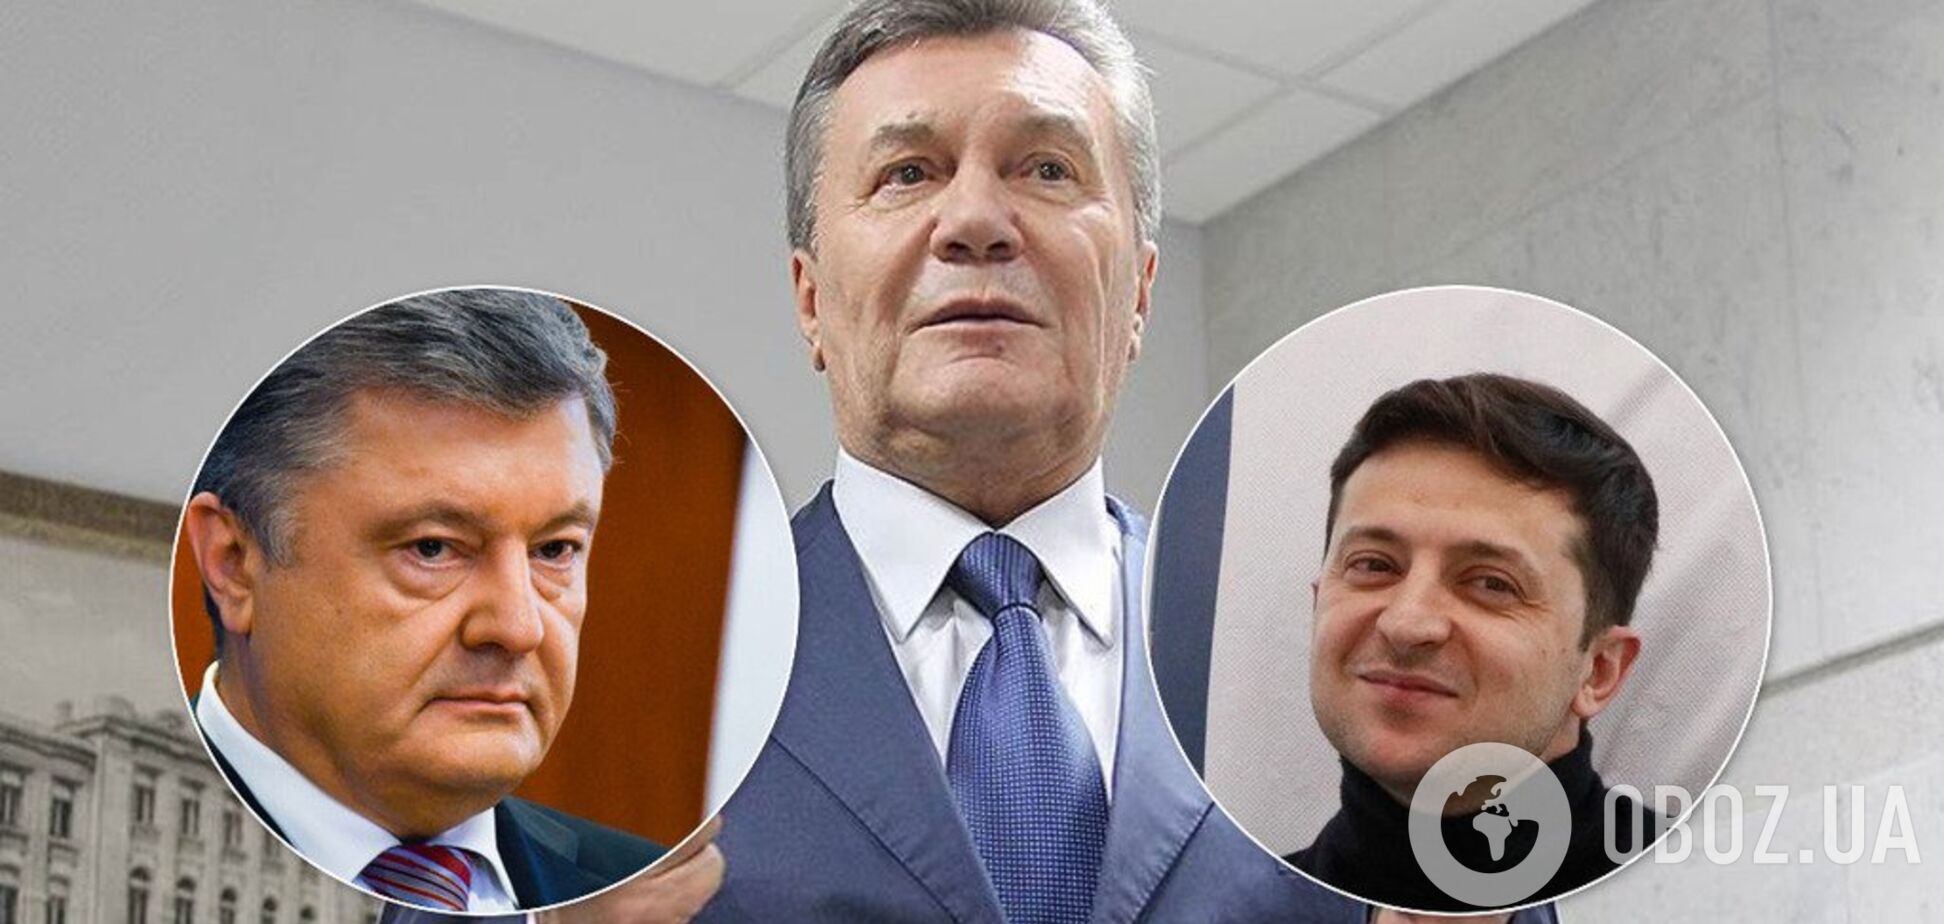 'За кого голосовать? Что в Ростове говорят?' Януковича ярко потроллили в сети